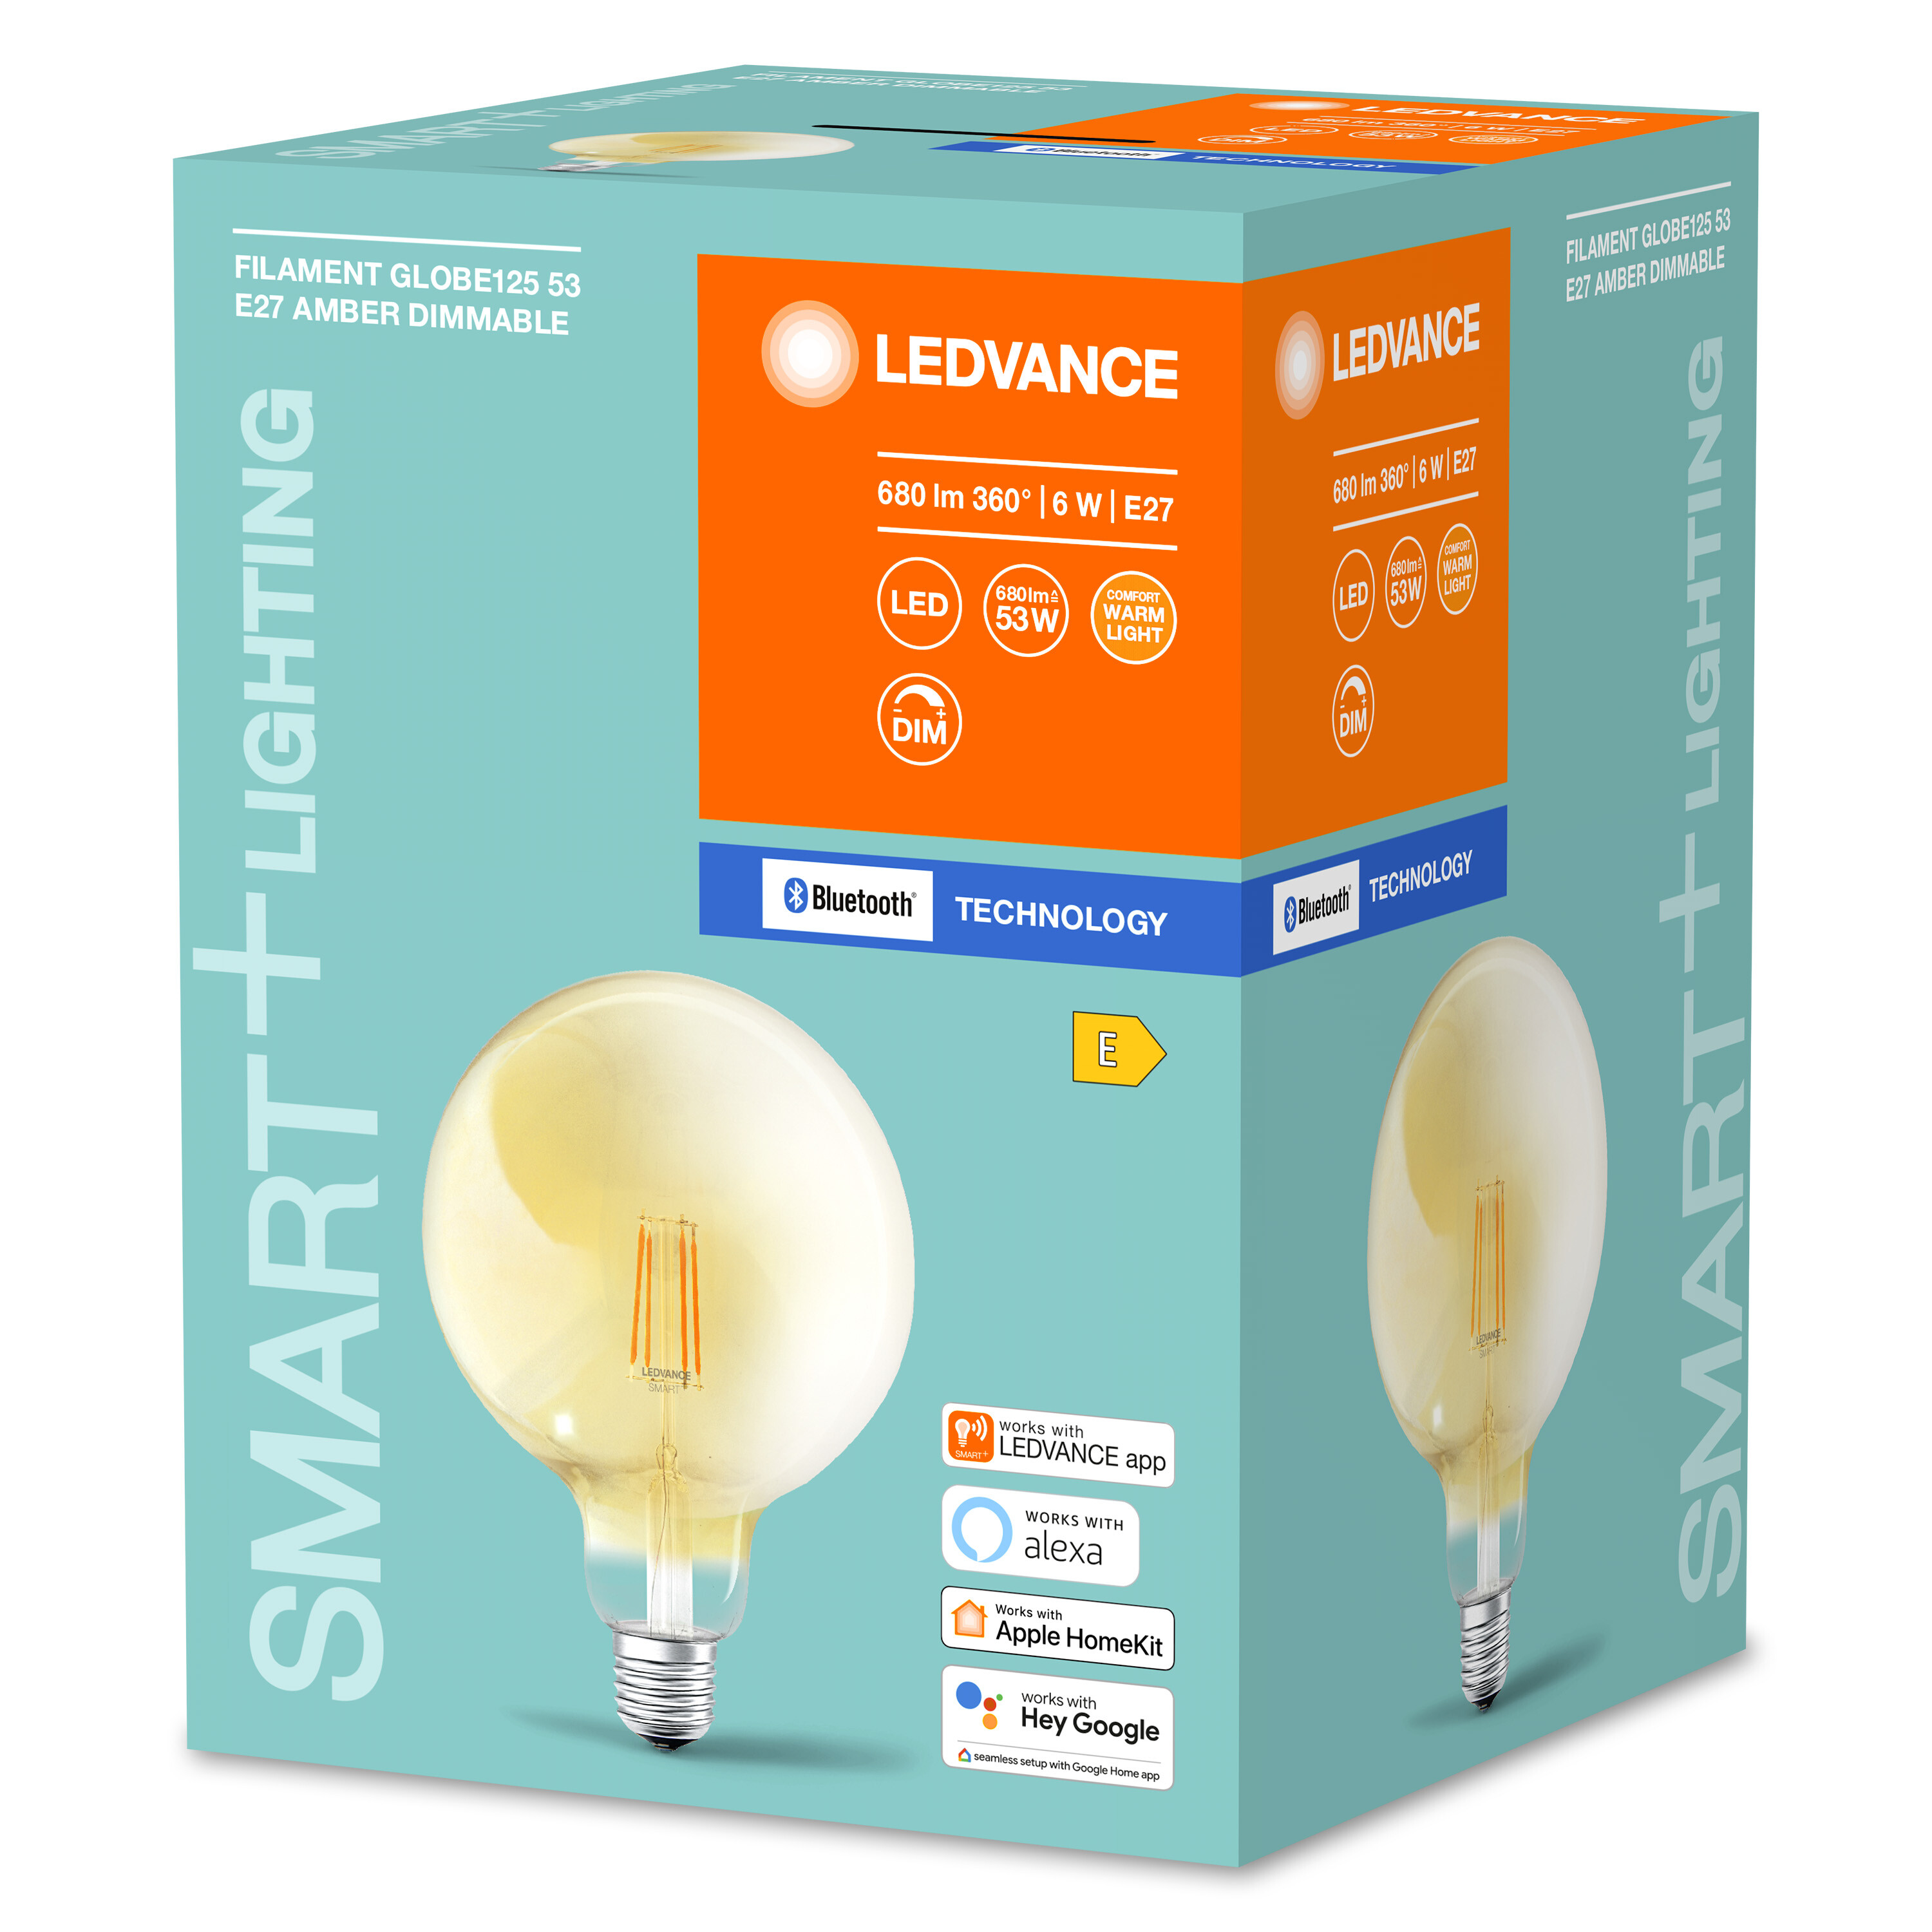 LED Dimmable LEDVANCE Globe SMART+ Warmweiß Filament Lampe